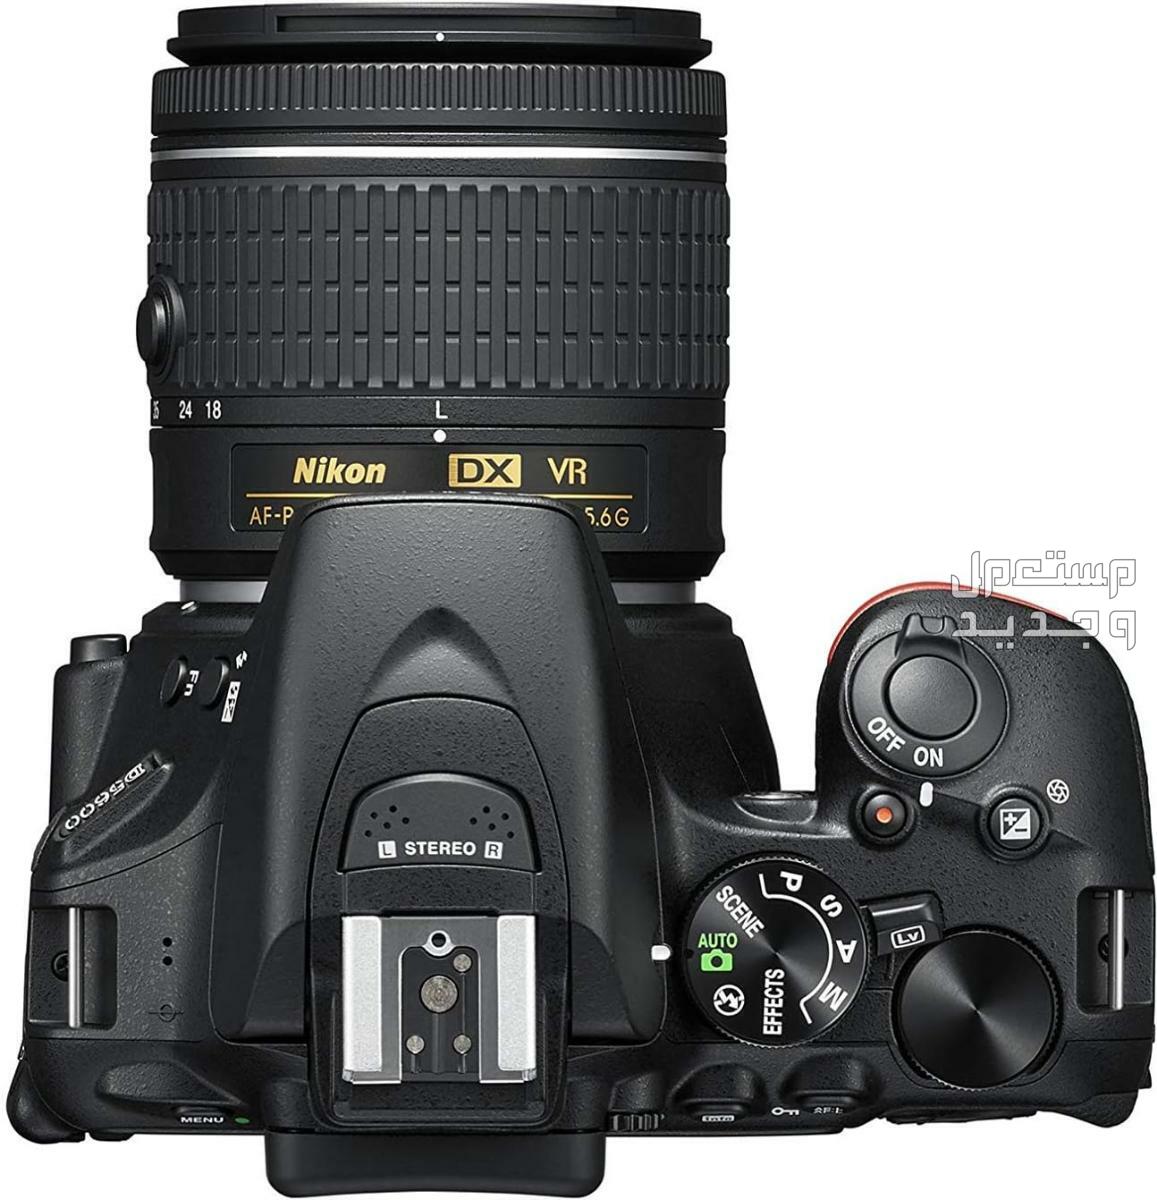 10 كاميرات تصوير ماركات عالمية بأسعار رخيصة مميزات كاميرا Nikon D5600